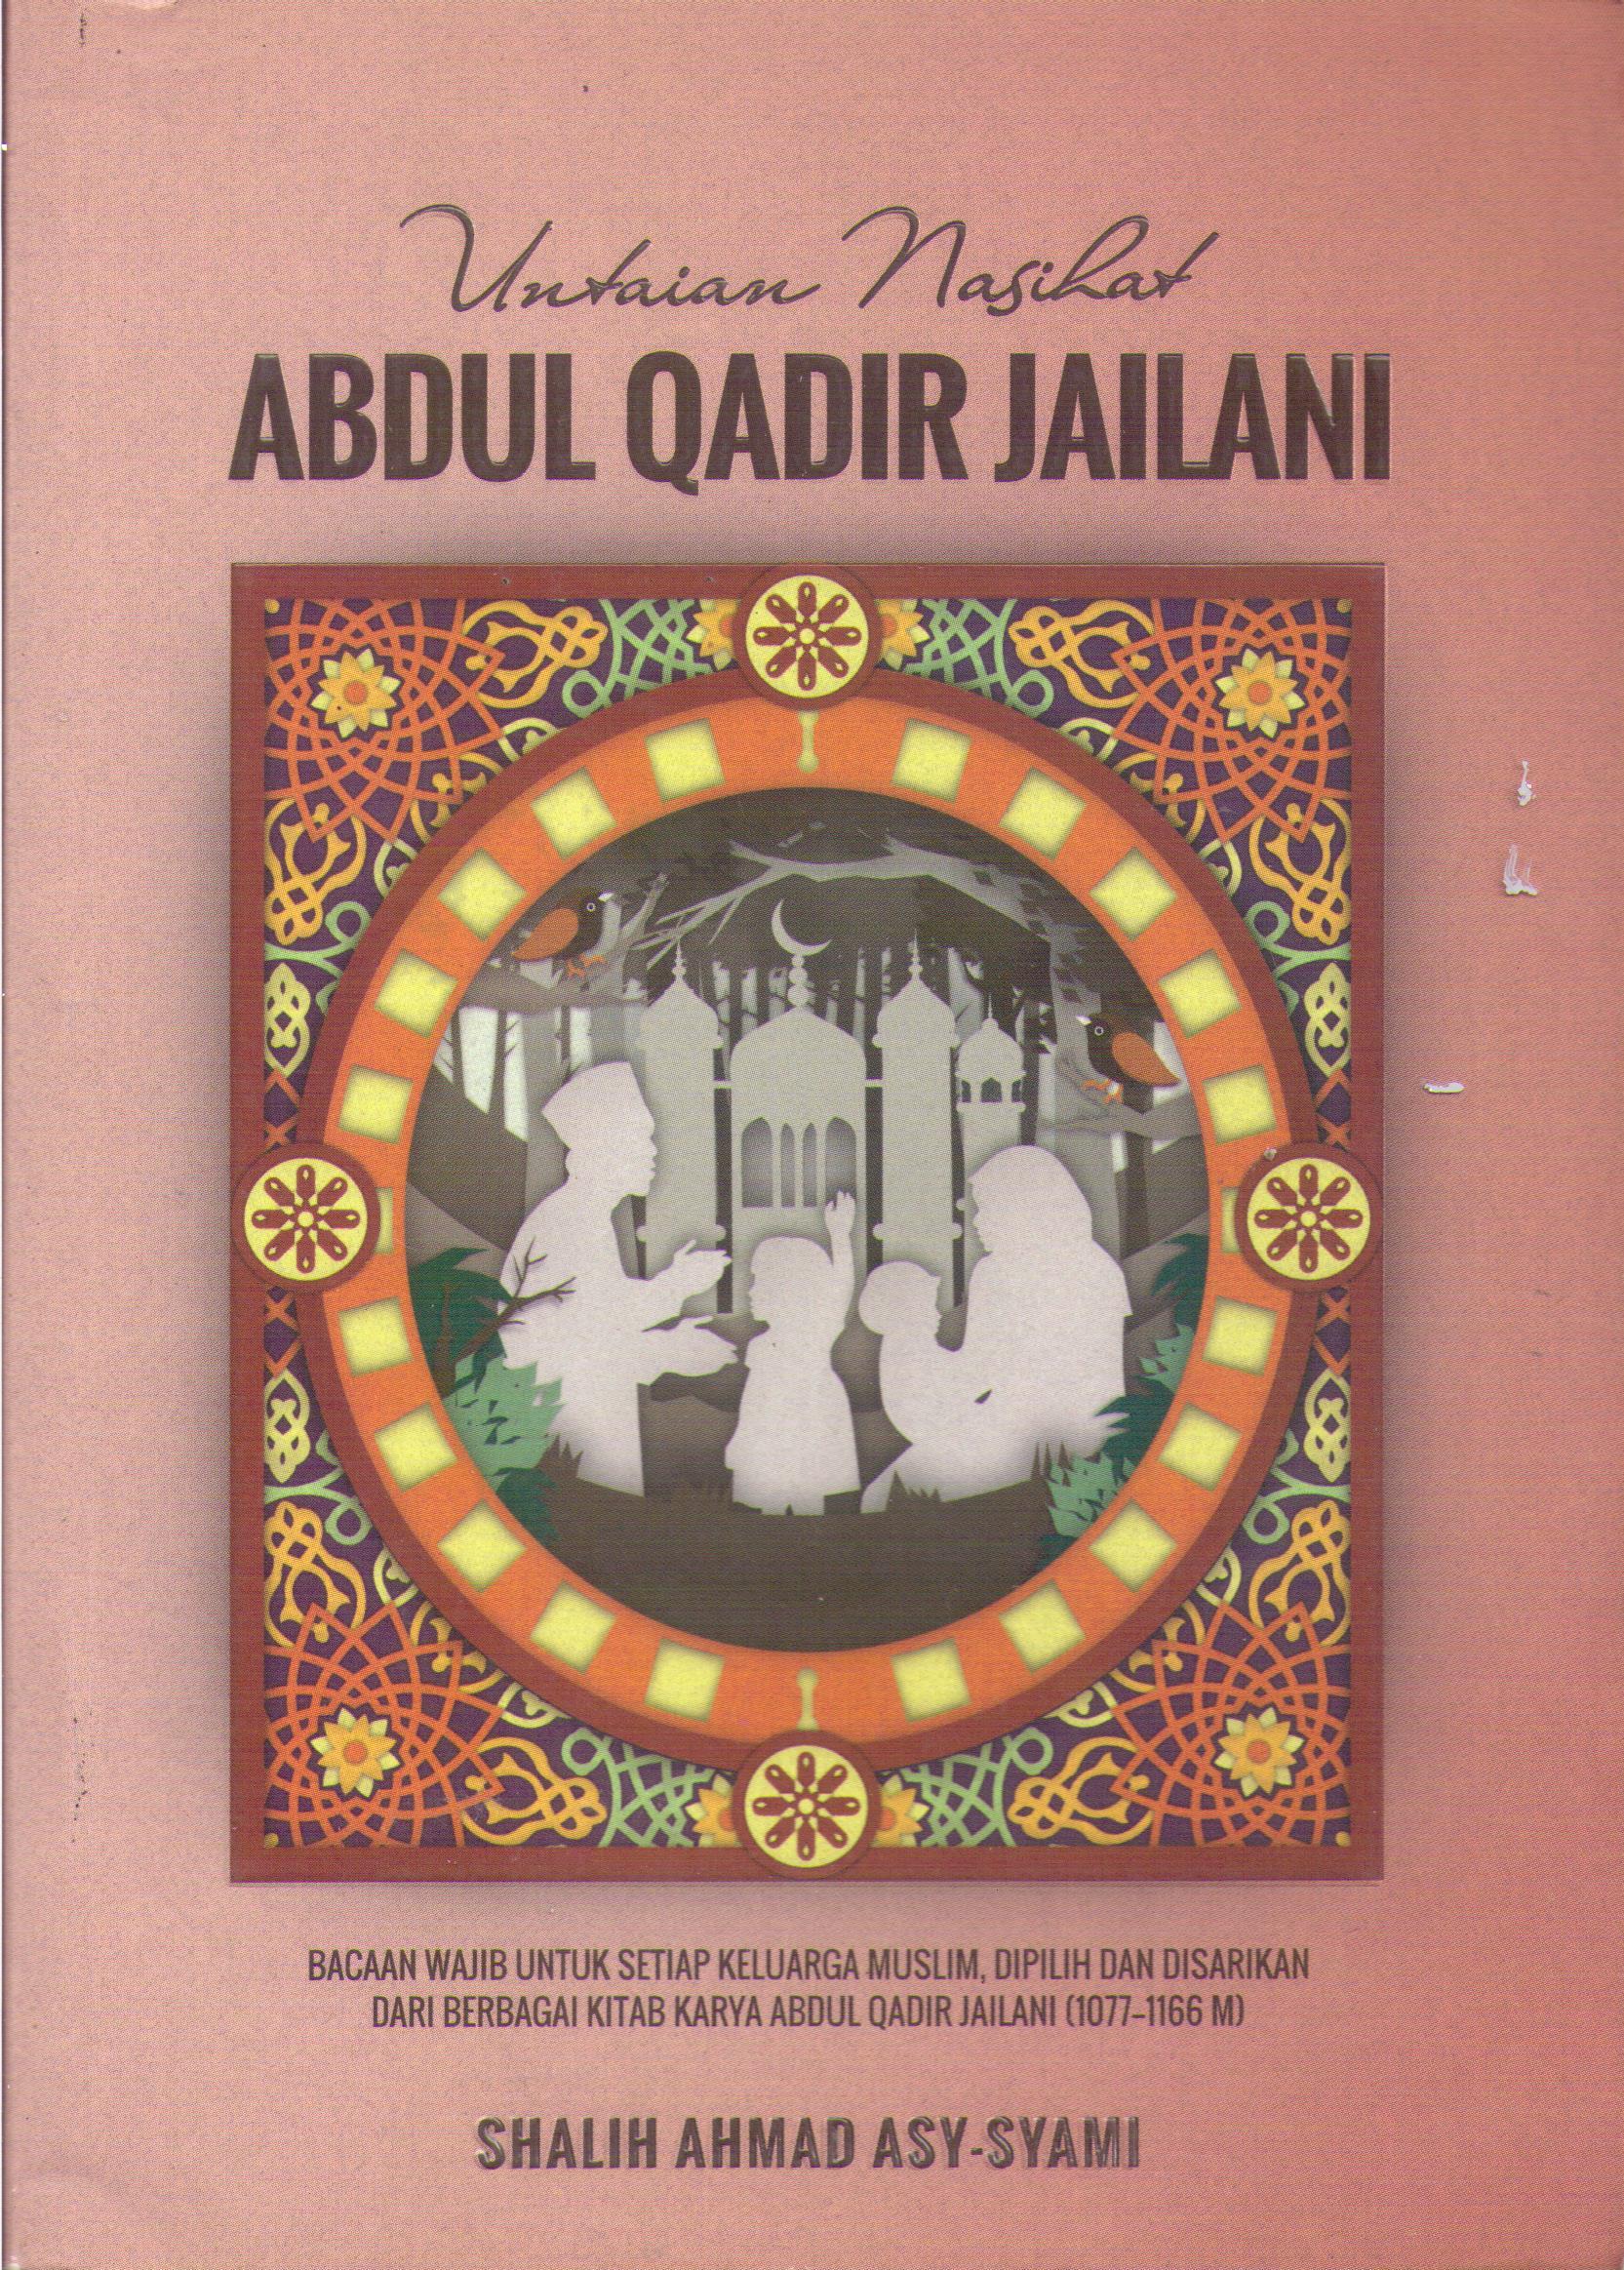 Untaian Nasihat Abdul Qadir Jailani